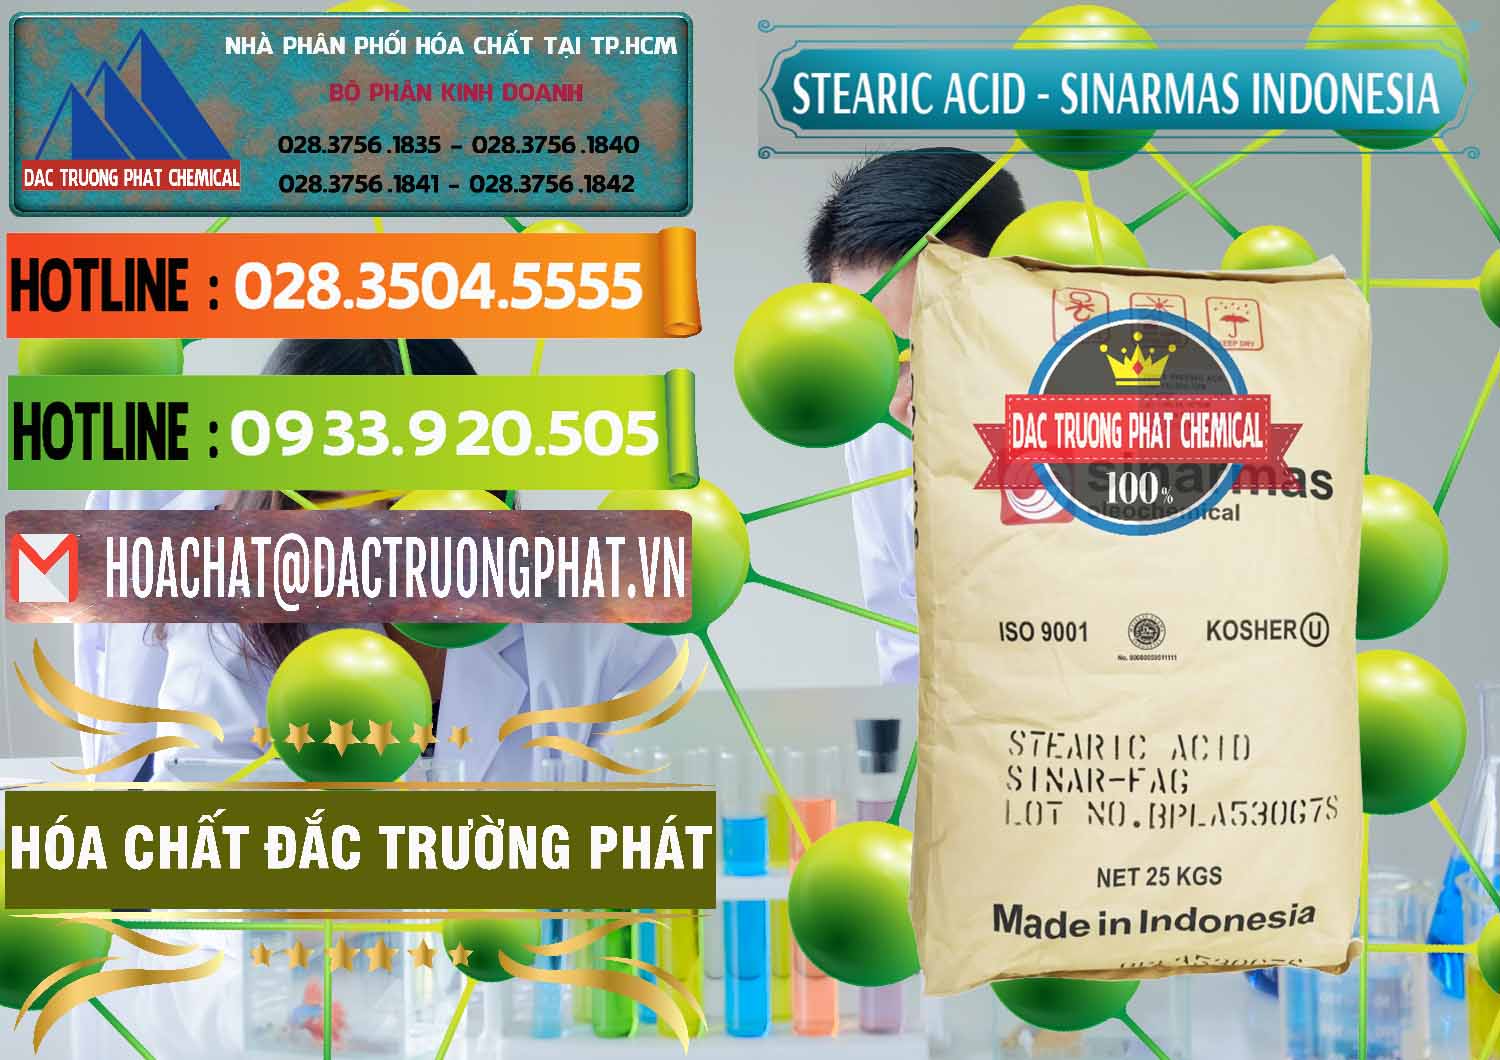 Cty phân phối & bán Axit Stearic - Stearic Acid Sinarmas Indonesia - 0389 - Nơi cung cấp và phân phối hóa chất tại TP.HCM - cungcaphoachat.com.vn